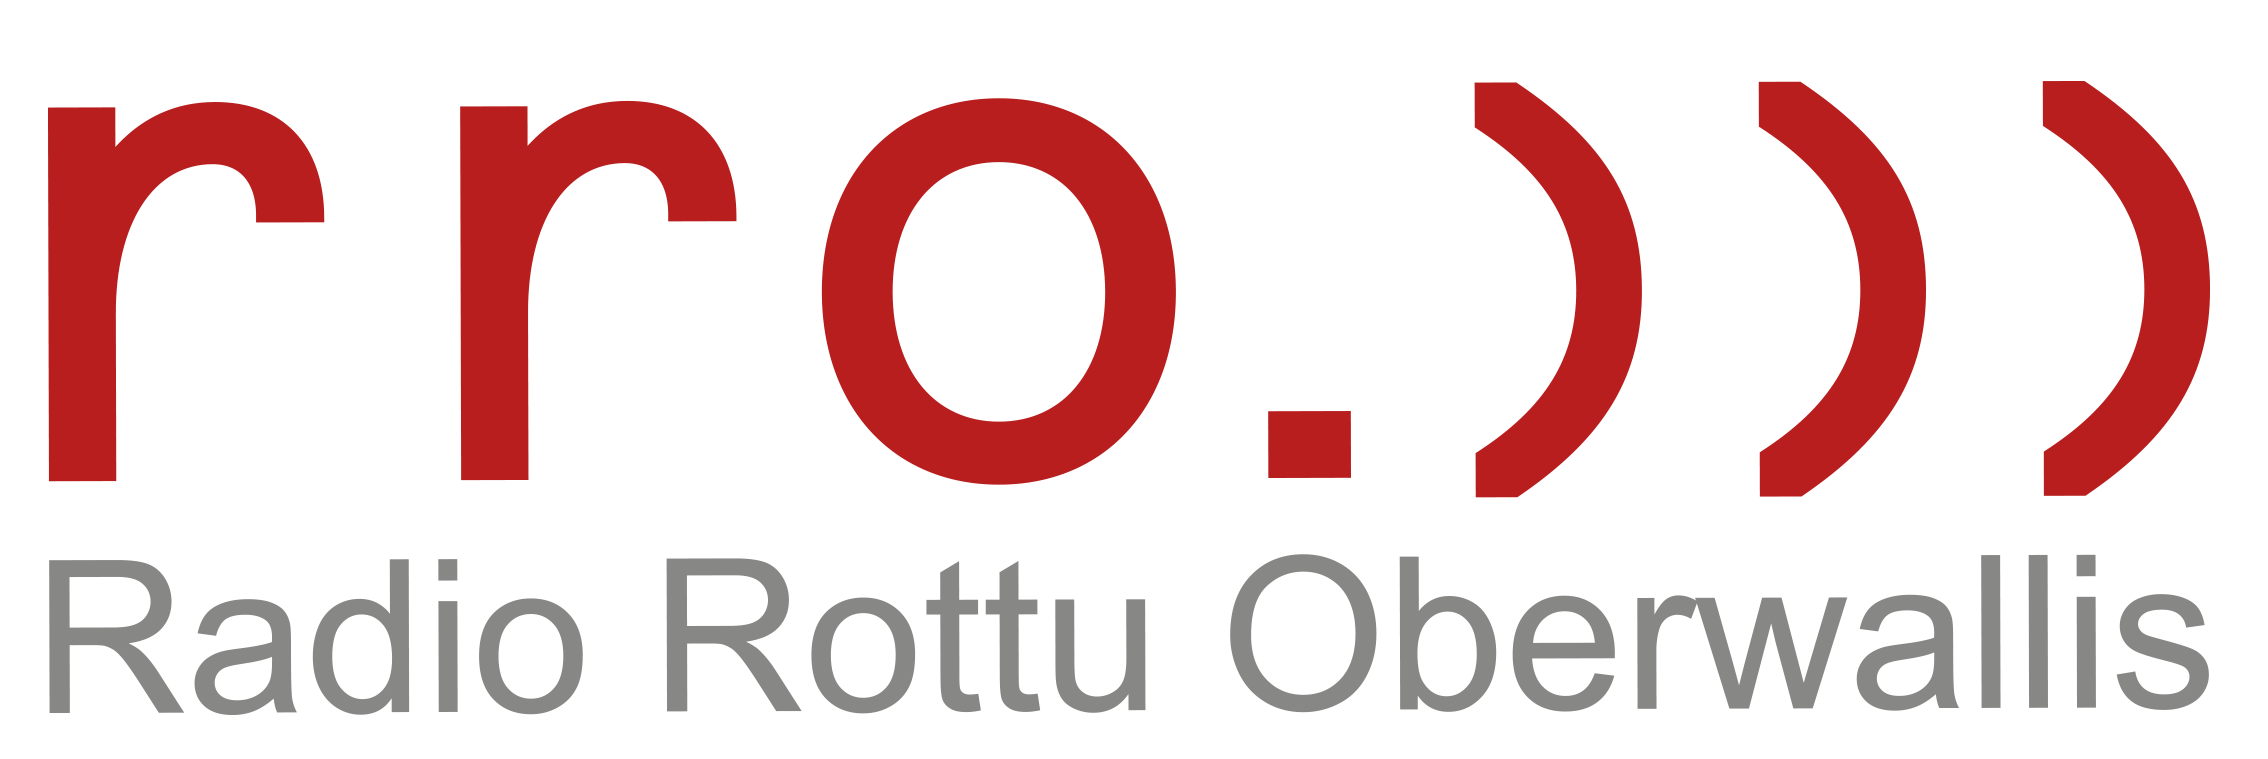 Radio Rottu Oberwallis Online by Schweizerbergkristalle.ch